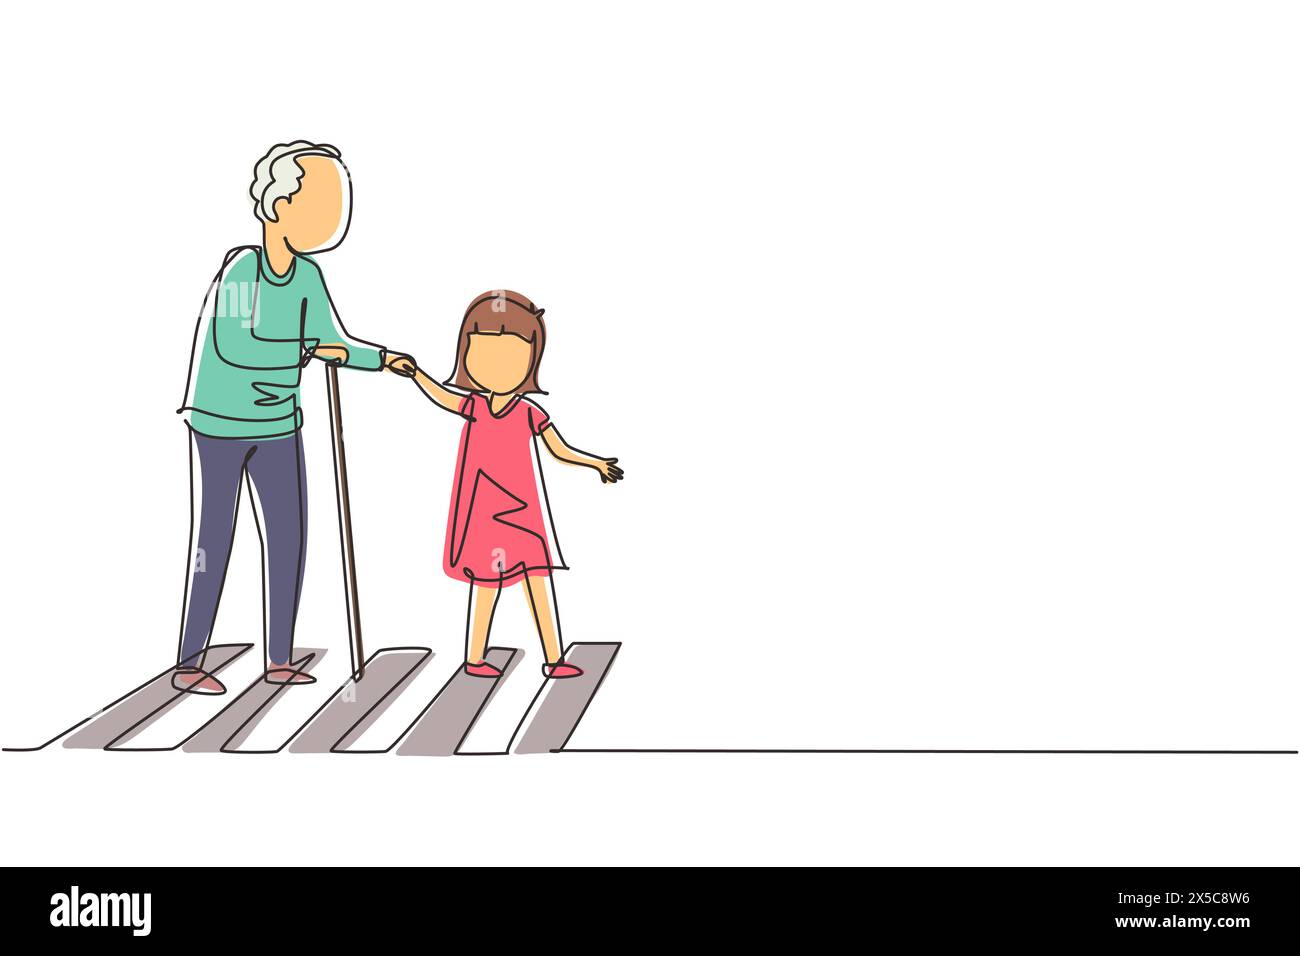 Eine einzelne durchgehende Linie zeichnet höfliches Mädchen, das Großvater hilft, die Straße zu überqueren. Höflicher, netter Junge, der den alten Mann über die Straße nimmt und Hand hält. Manieren A Stock Vektor